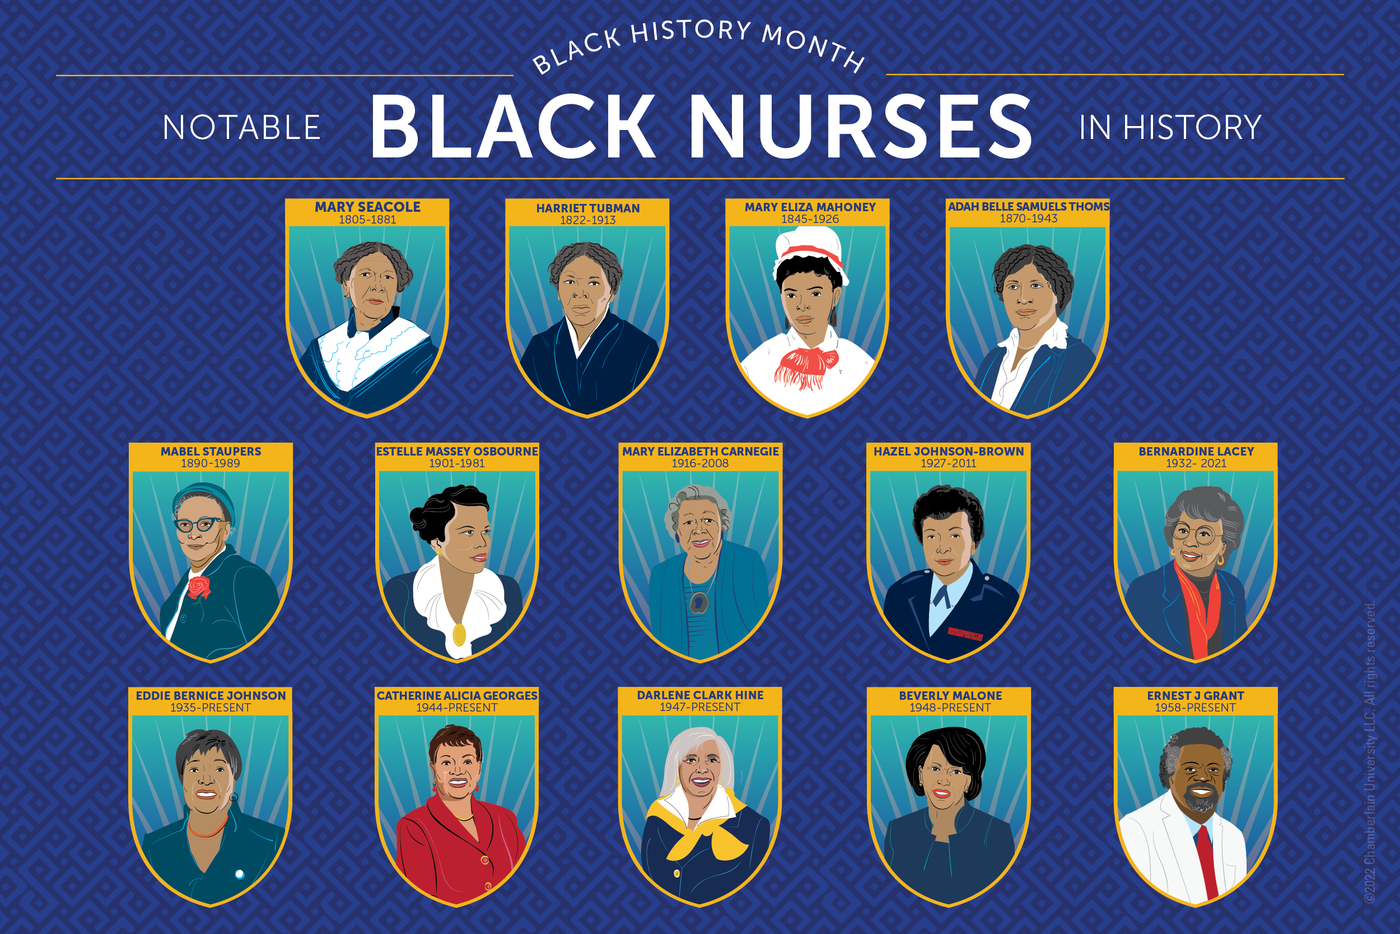 Black Nurse